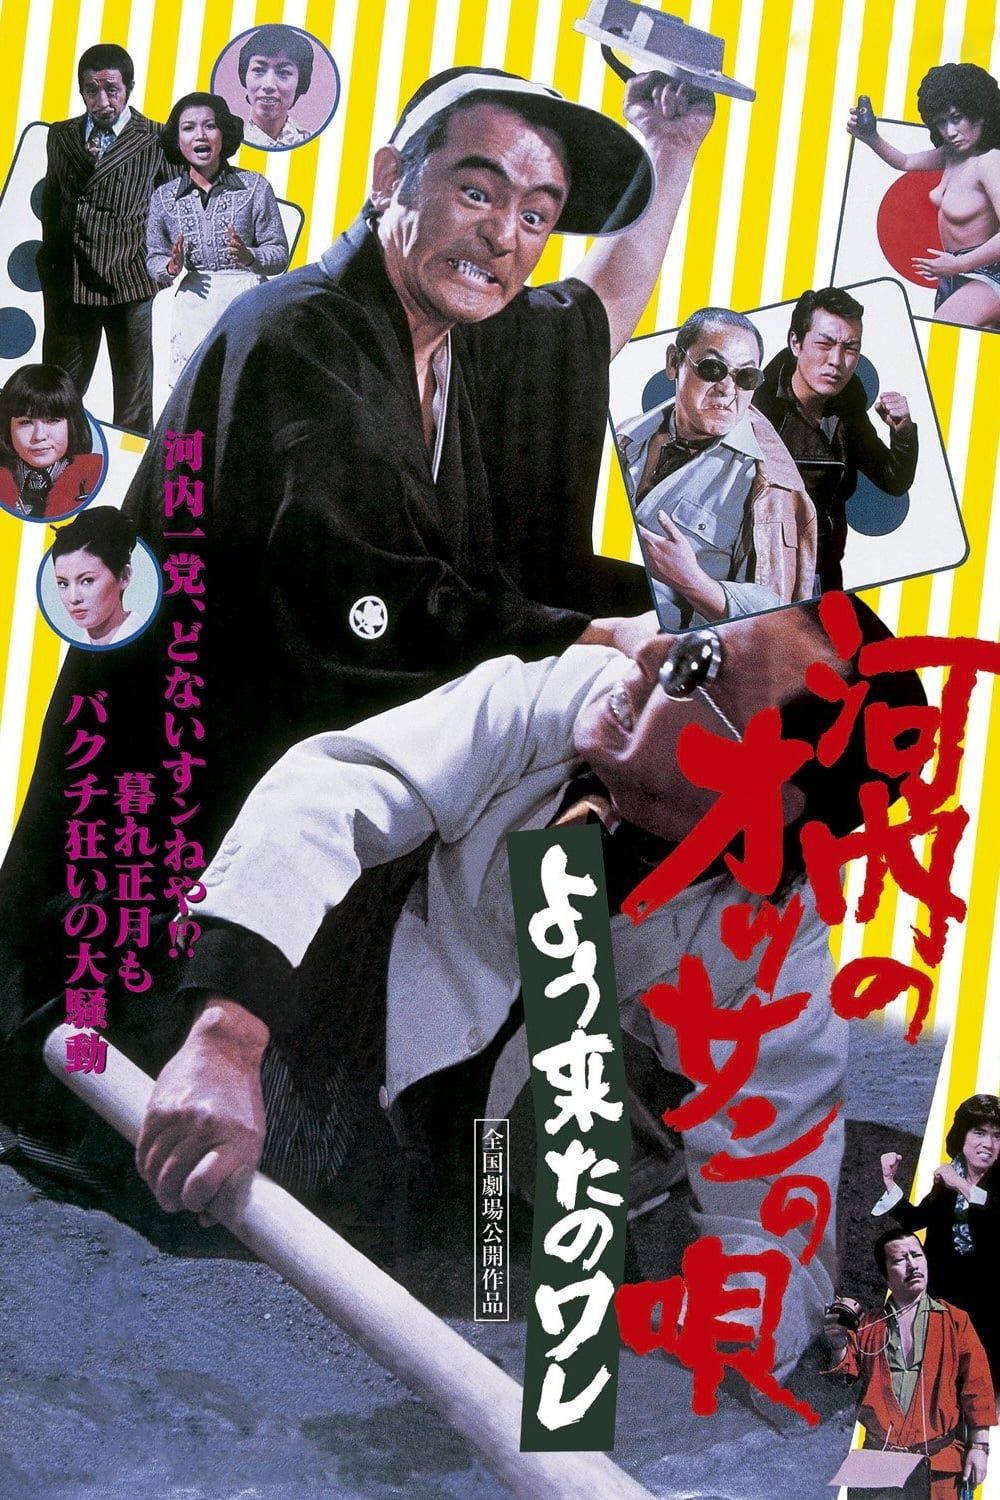 Stream Seishun Buta yarou movie OST 静かな空気 by kawacy